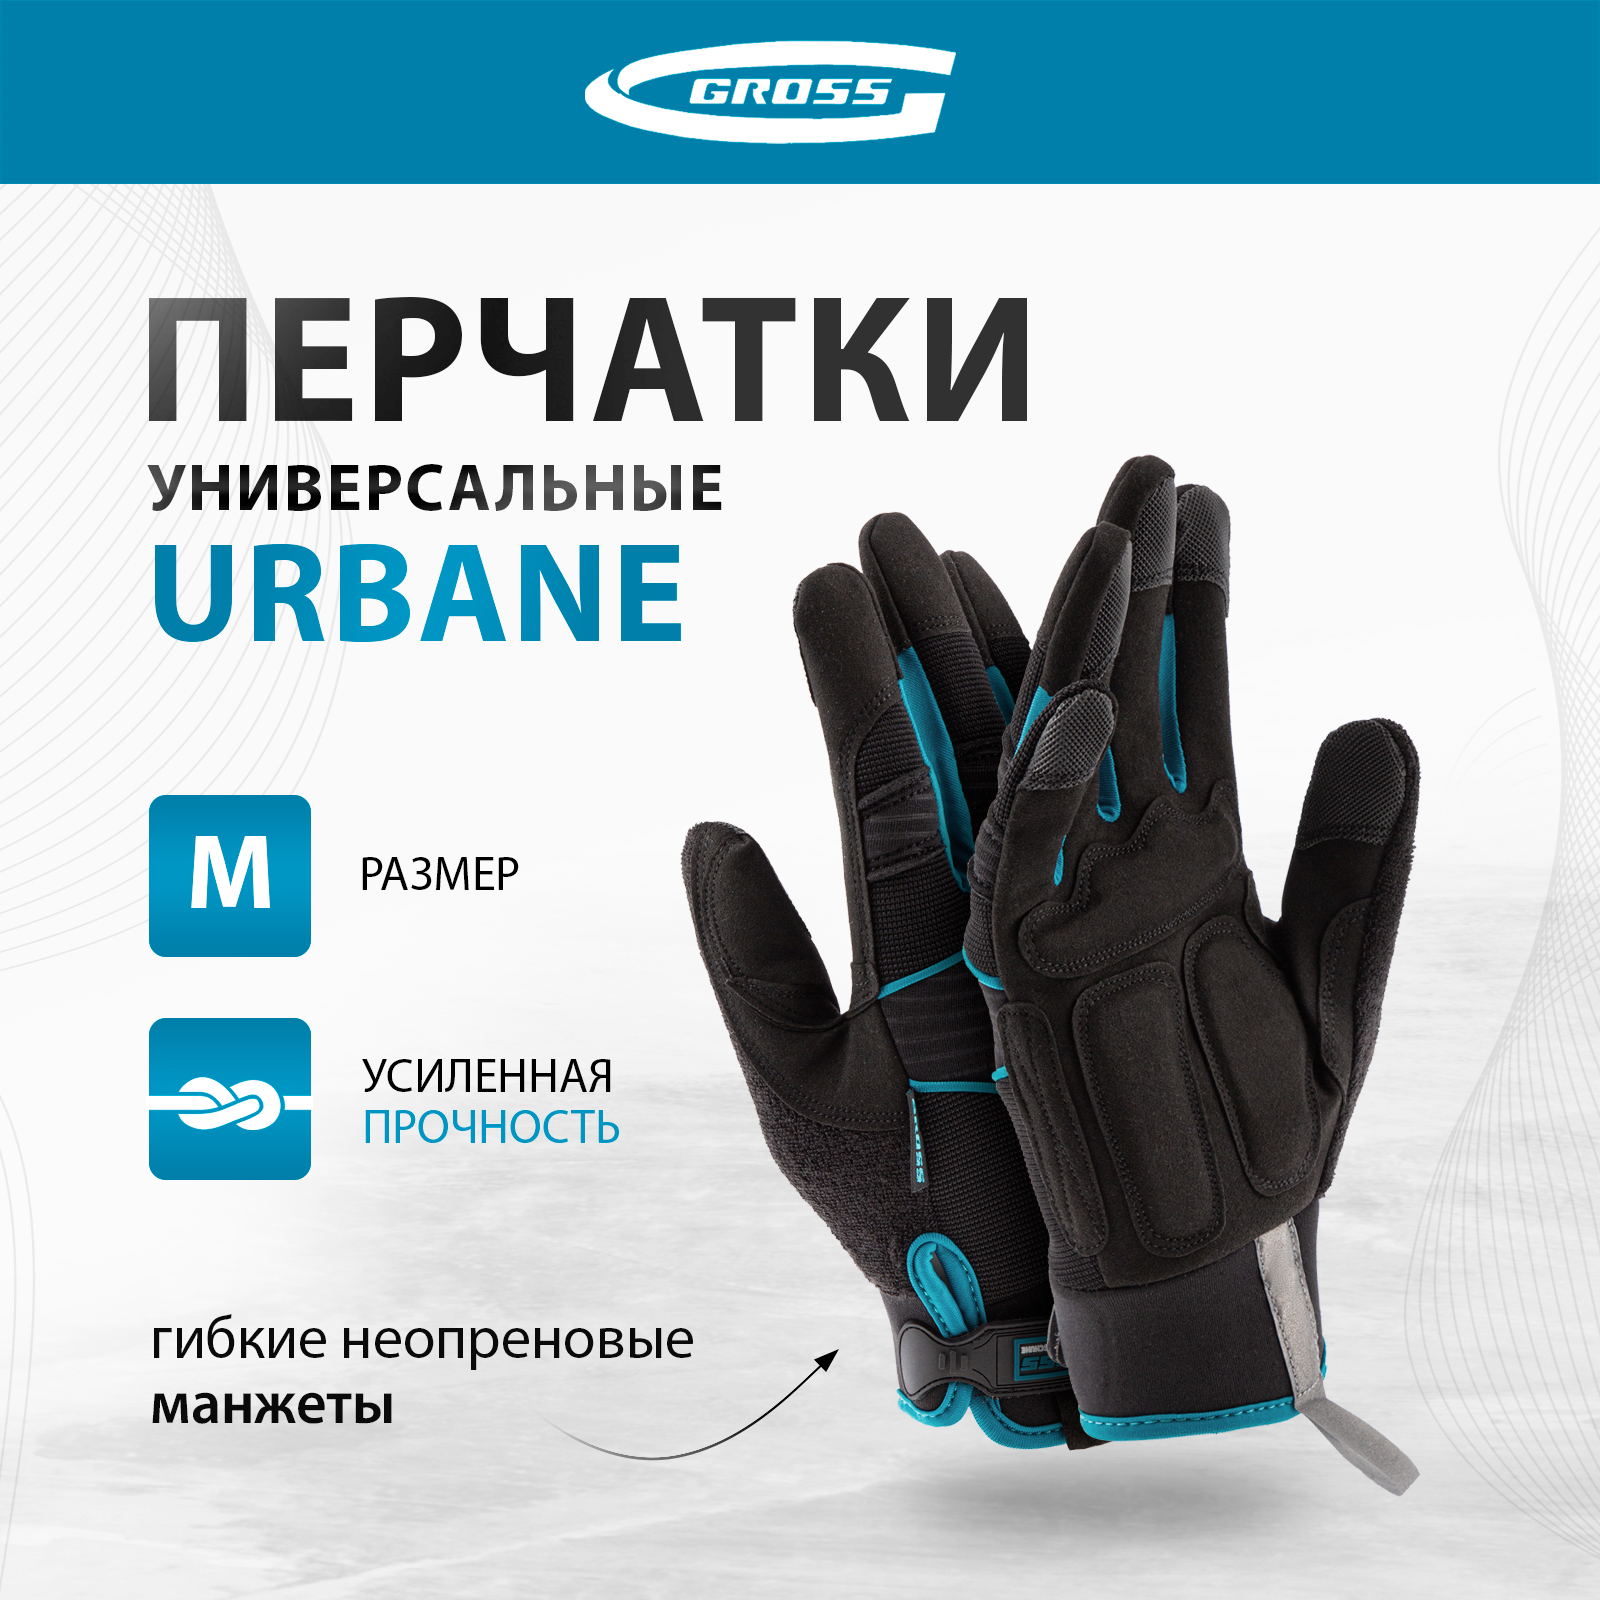 Перчатки универсальные комбинированные GROSS URBANE размер M (8) 90311